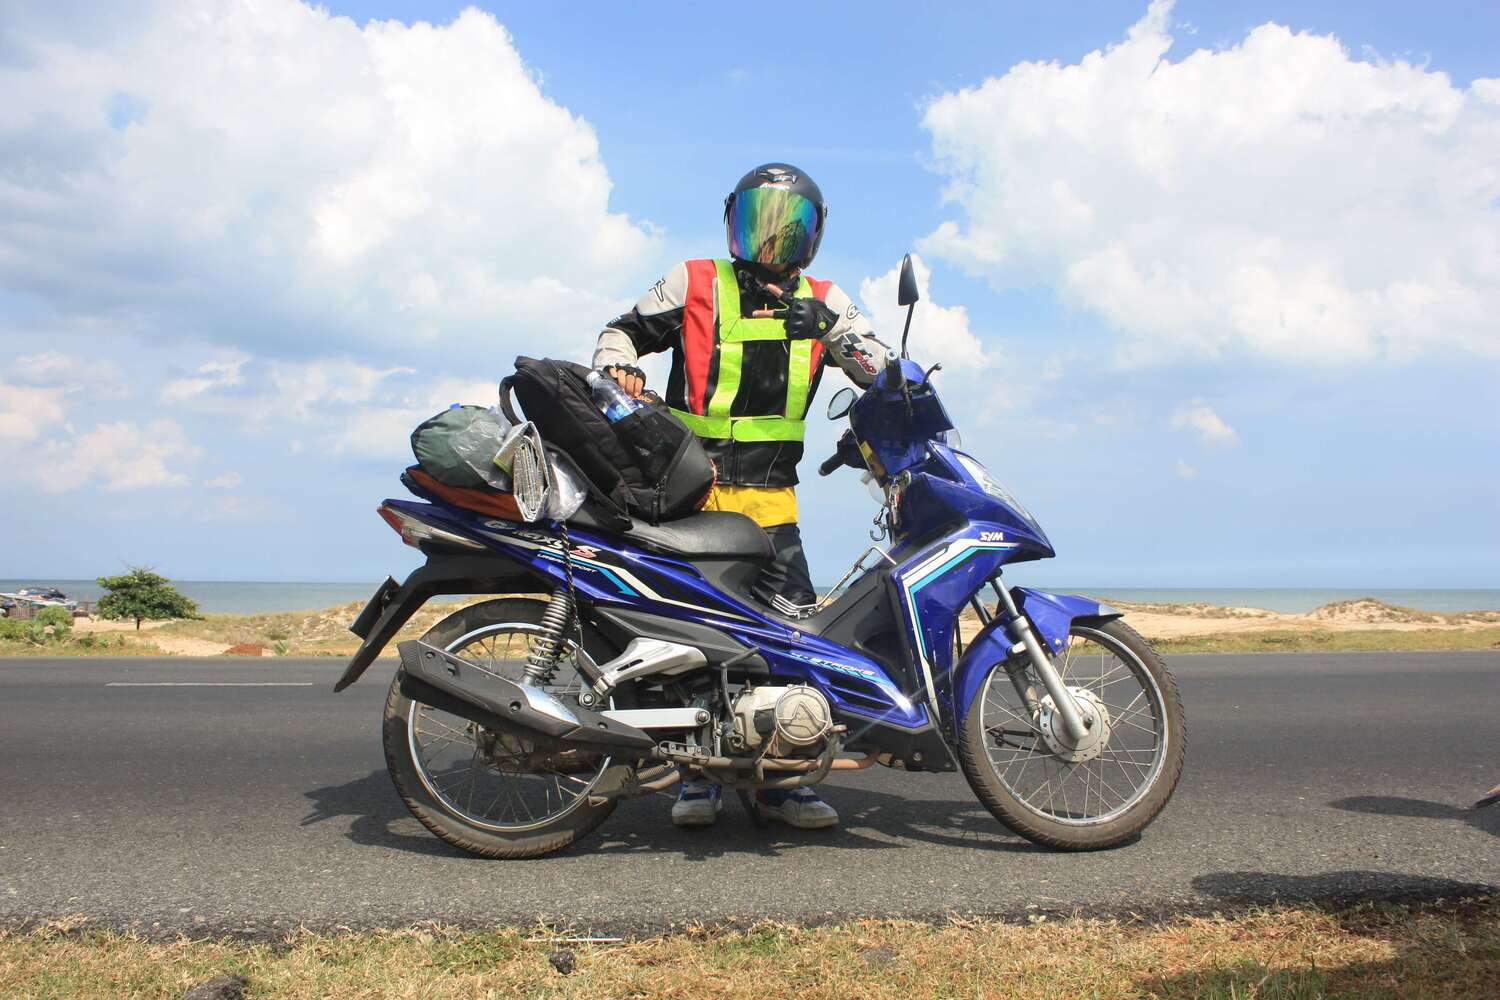 Kinh nghiệm phượt Ninh Bình bằng xe máy từ A - Z mà tín đồ xê dịch nên biết 3